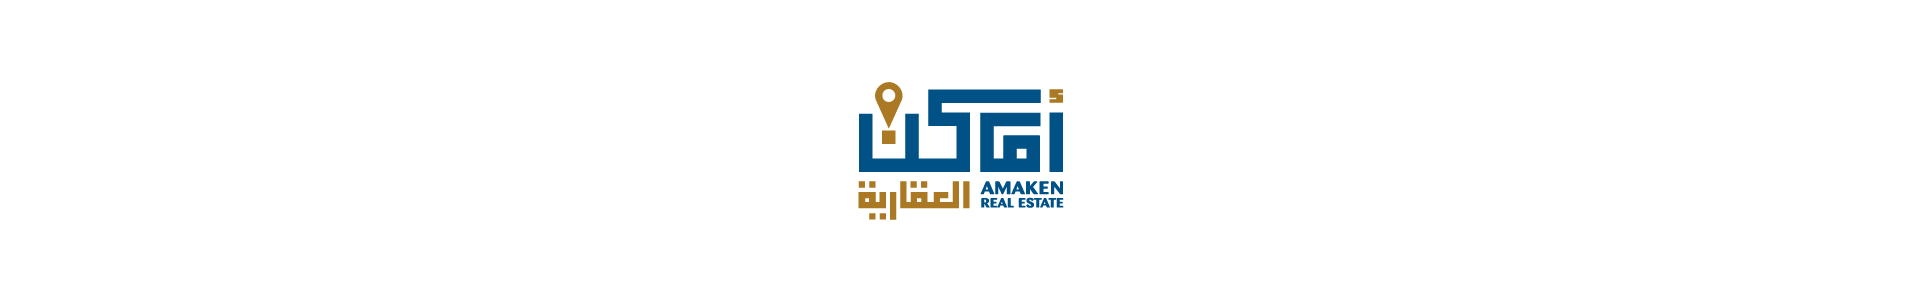 artlink advertising Branding Amaken